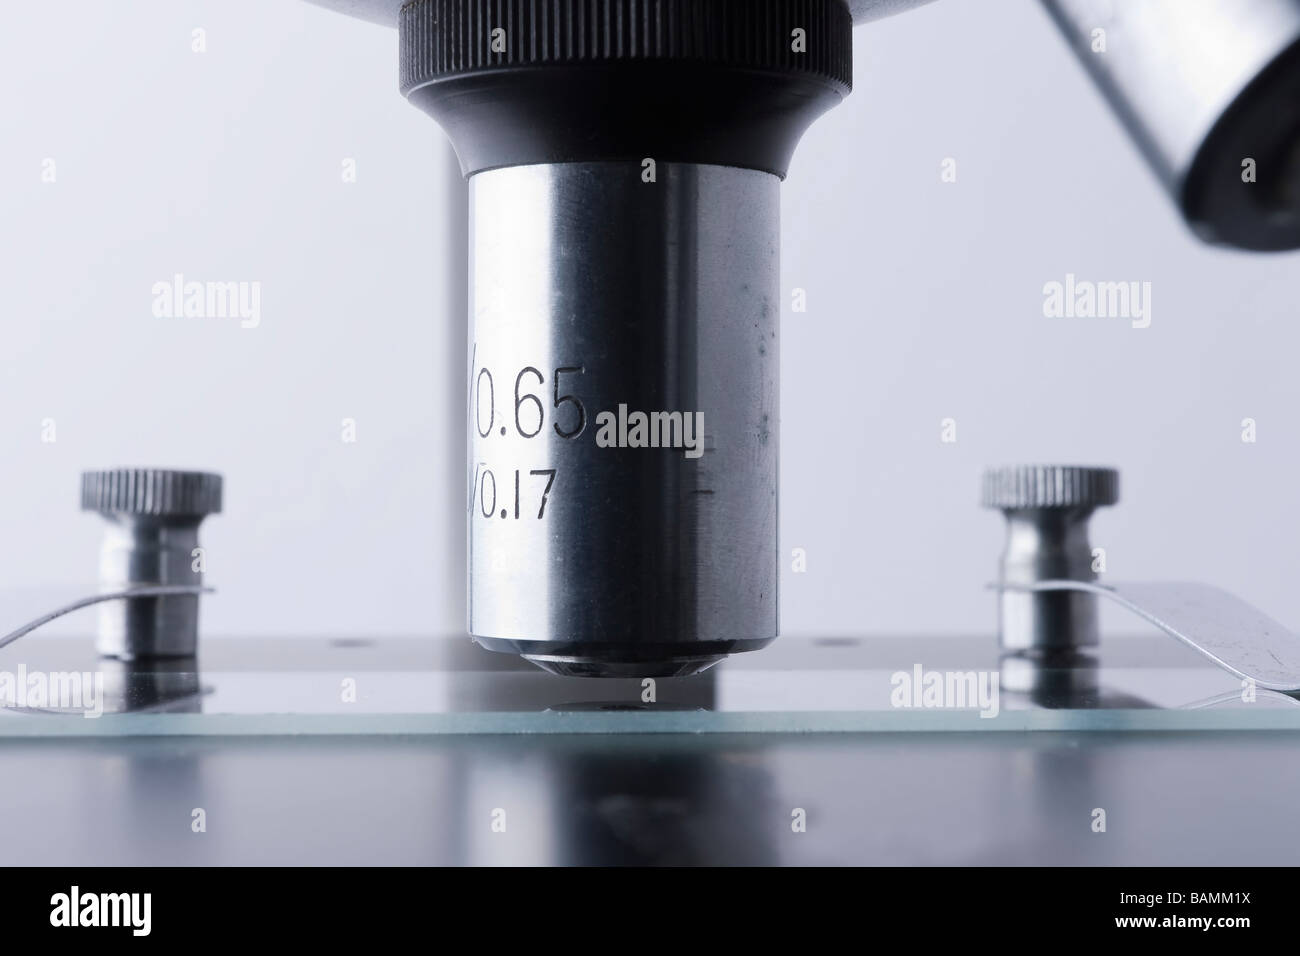 Dettaglio della lente di obiettivo su un microscopio Foto Stock